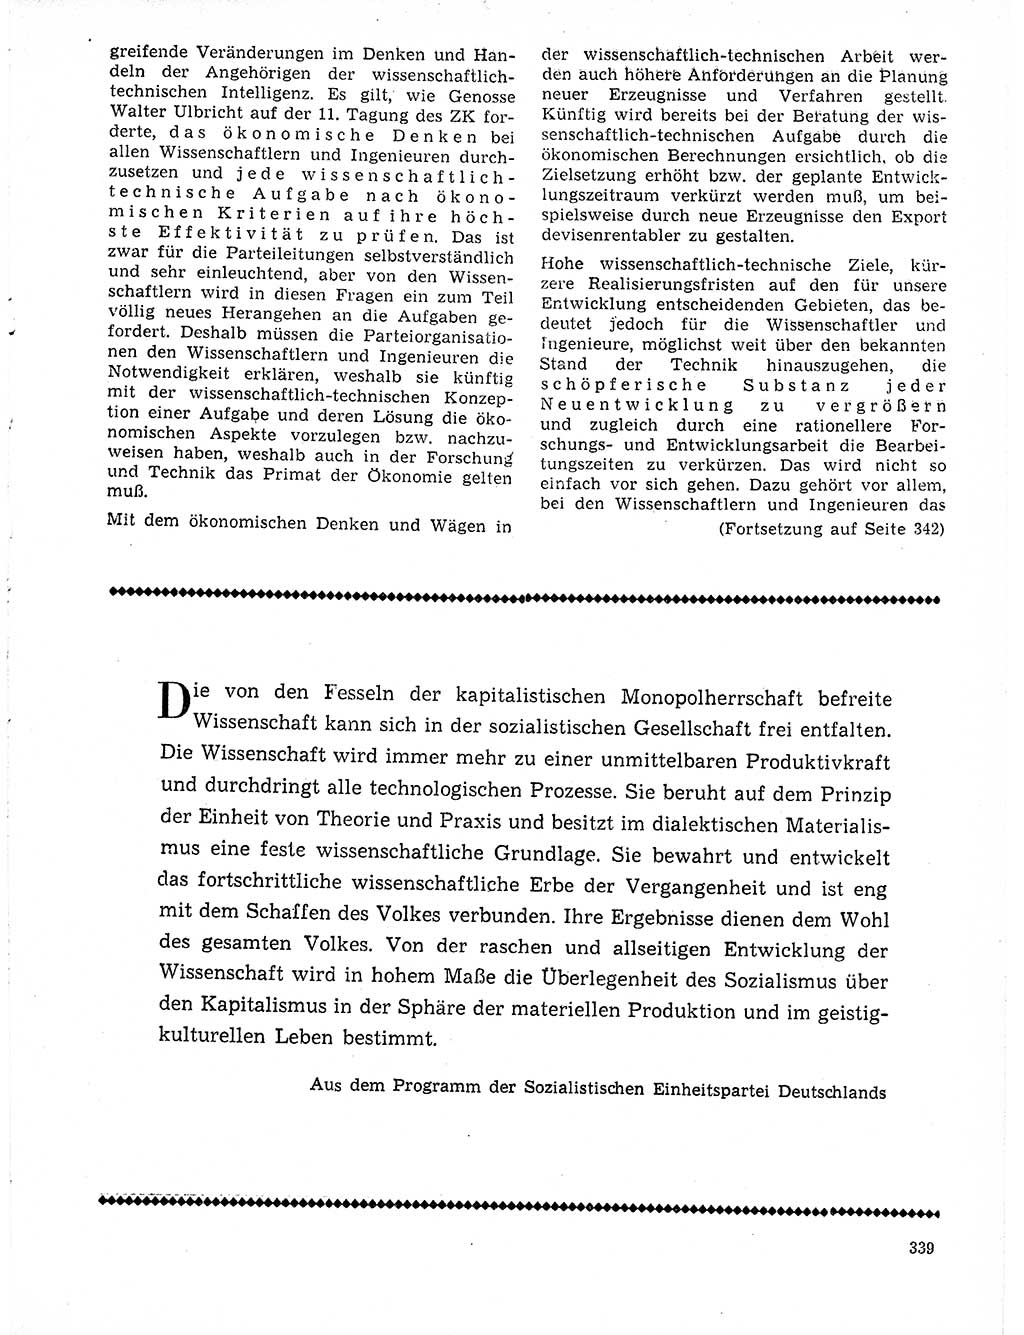 Neuer Weg (NW), Organ des Zentralkomitees (ZK) der SED (Sozialistische Einheitspartei Deutschlands) für Fragen des Parteilebens, 21. Jahrgang [Deutsche Demokratische Republik (DDR)] 1966, Seite 339 (NW ZK SED DDR 1966, S. 339)